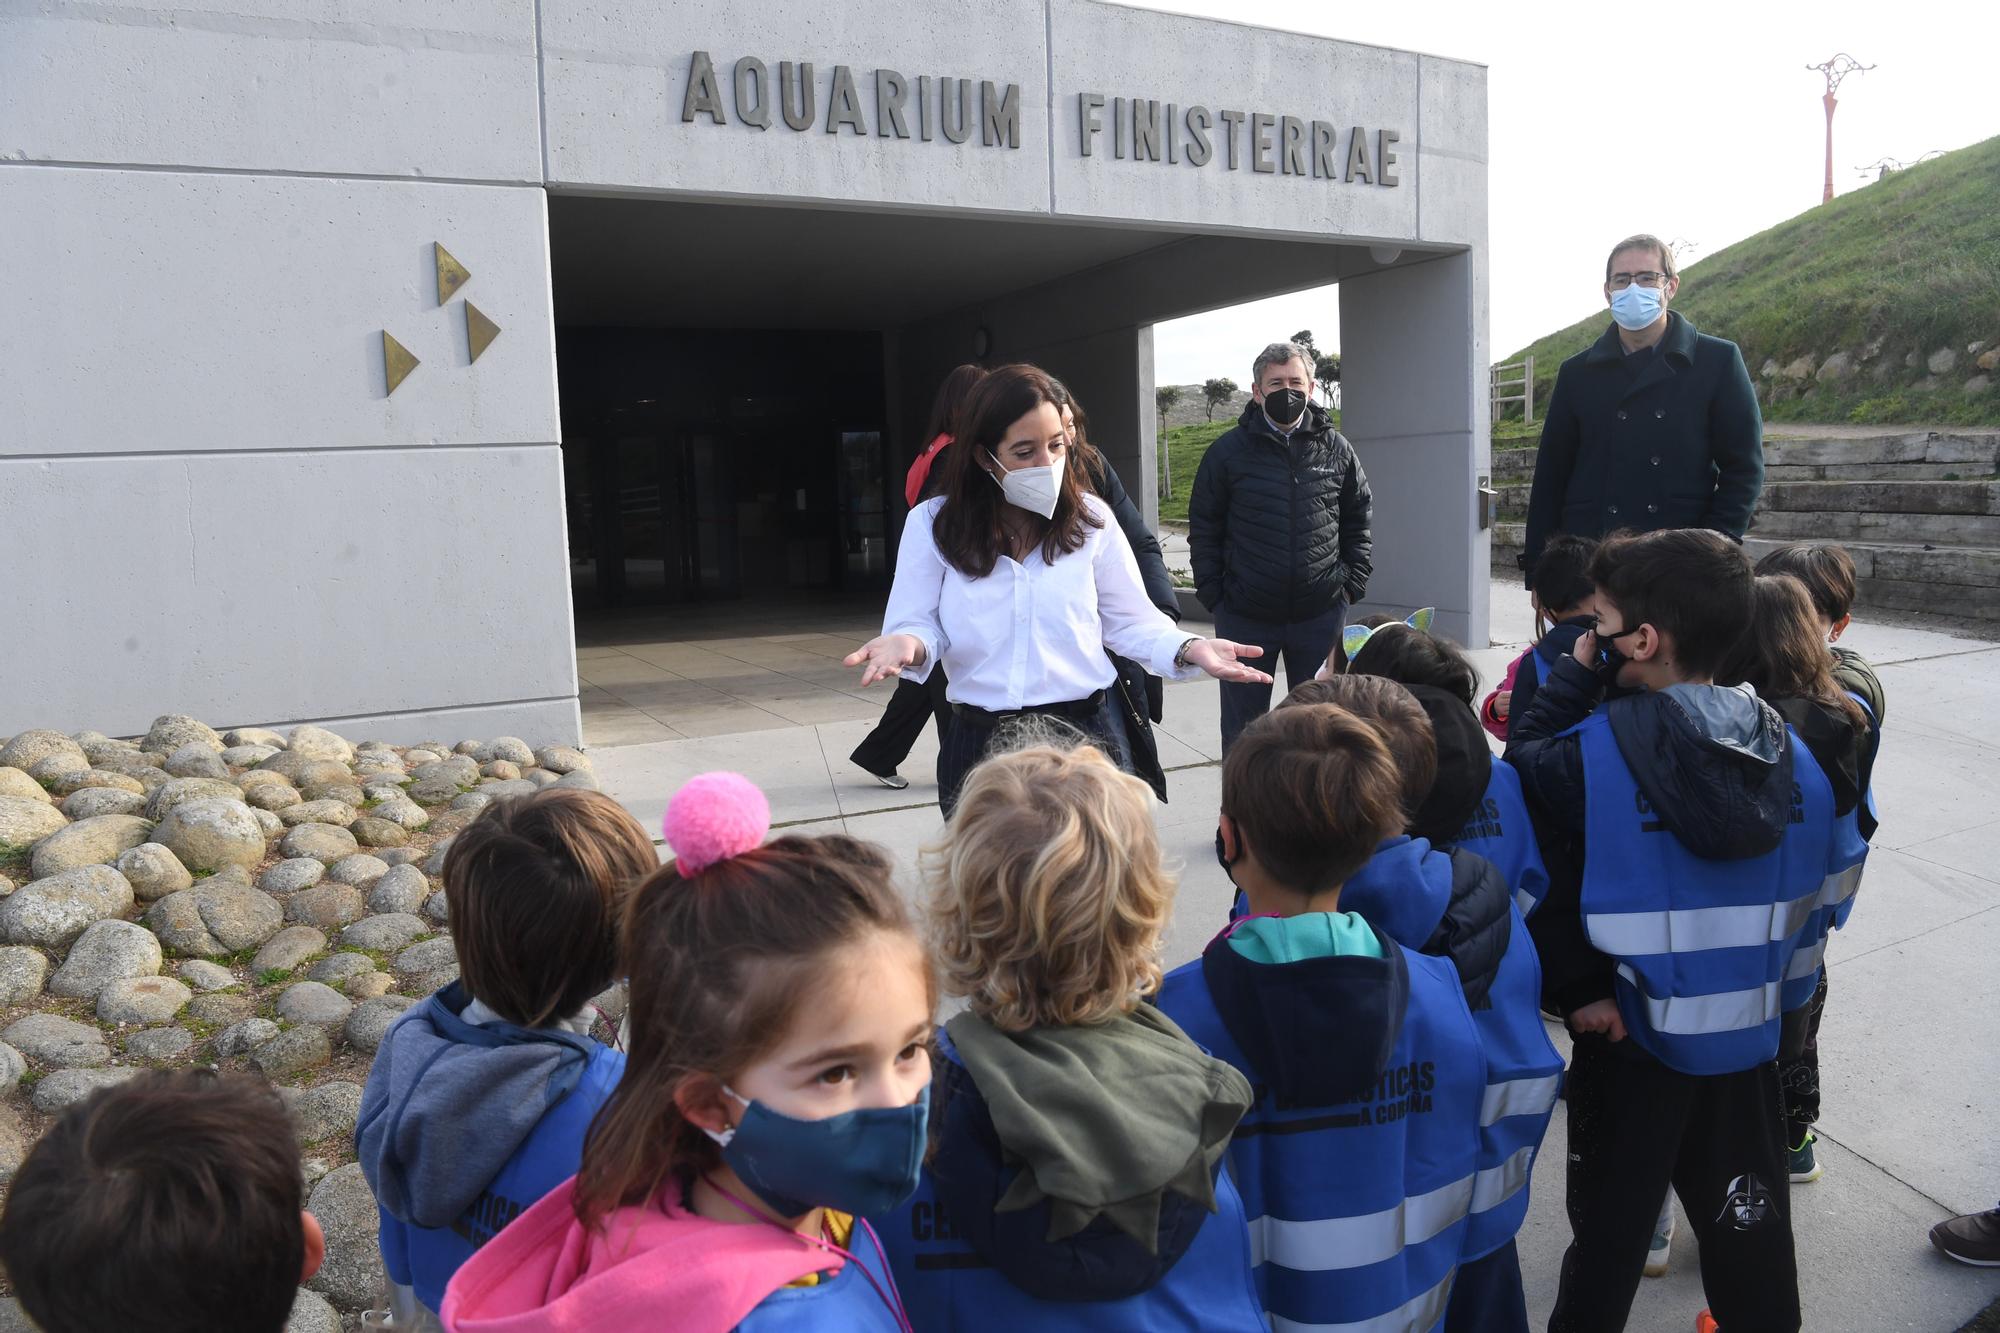 El Aquarium de A Coruña alcanza los 6 millones de visitantes